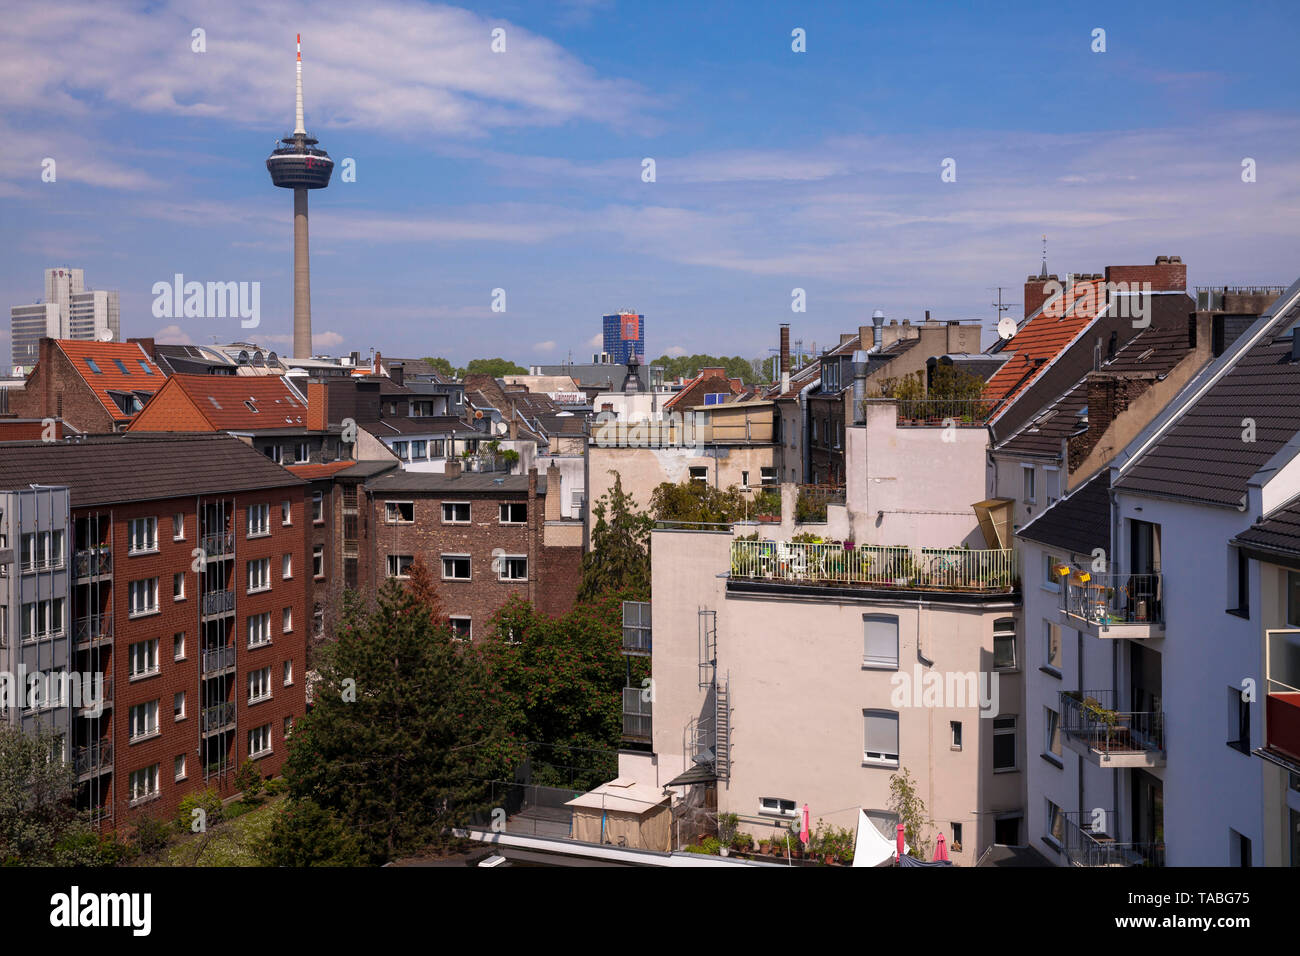 Blick über die Dächer der Häuser im Belgischen Viertel der Fernsehturm Colonius, Köln, Deutschland. Blick ueber die Daecher der Haeuser im B Stockfoto